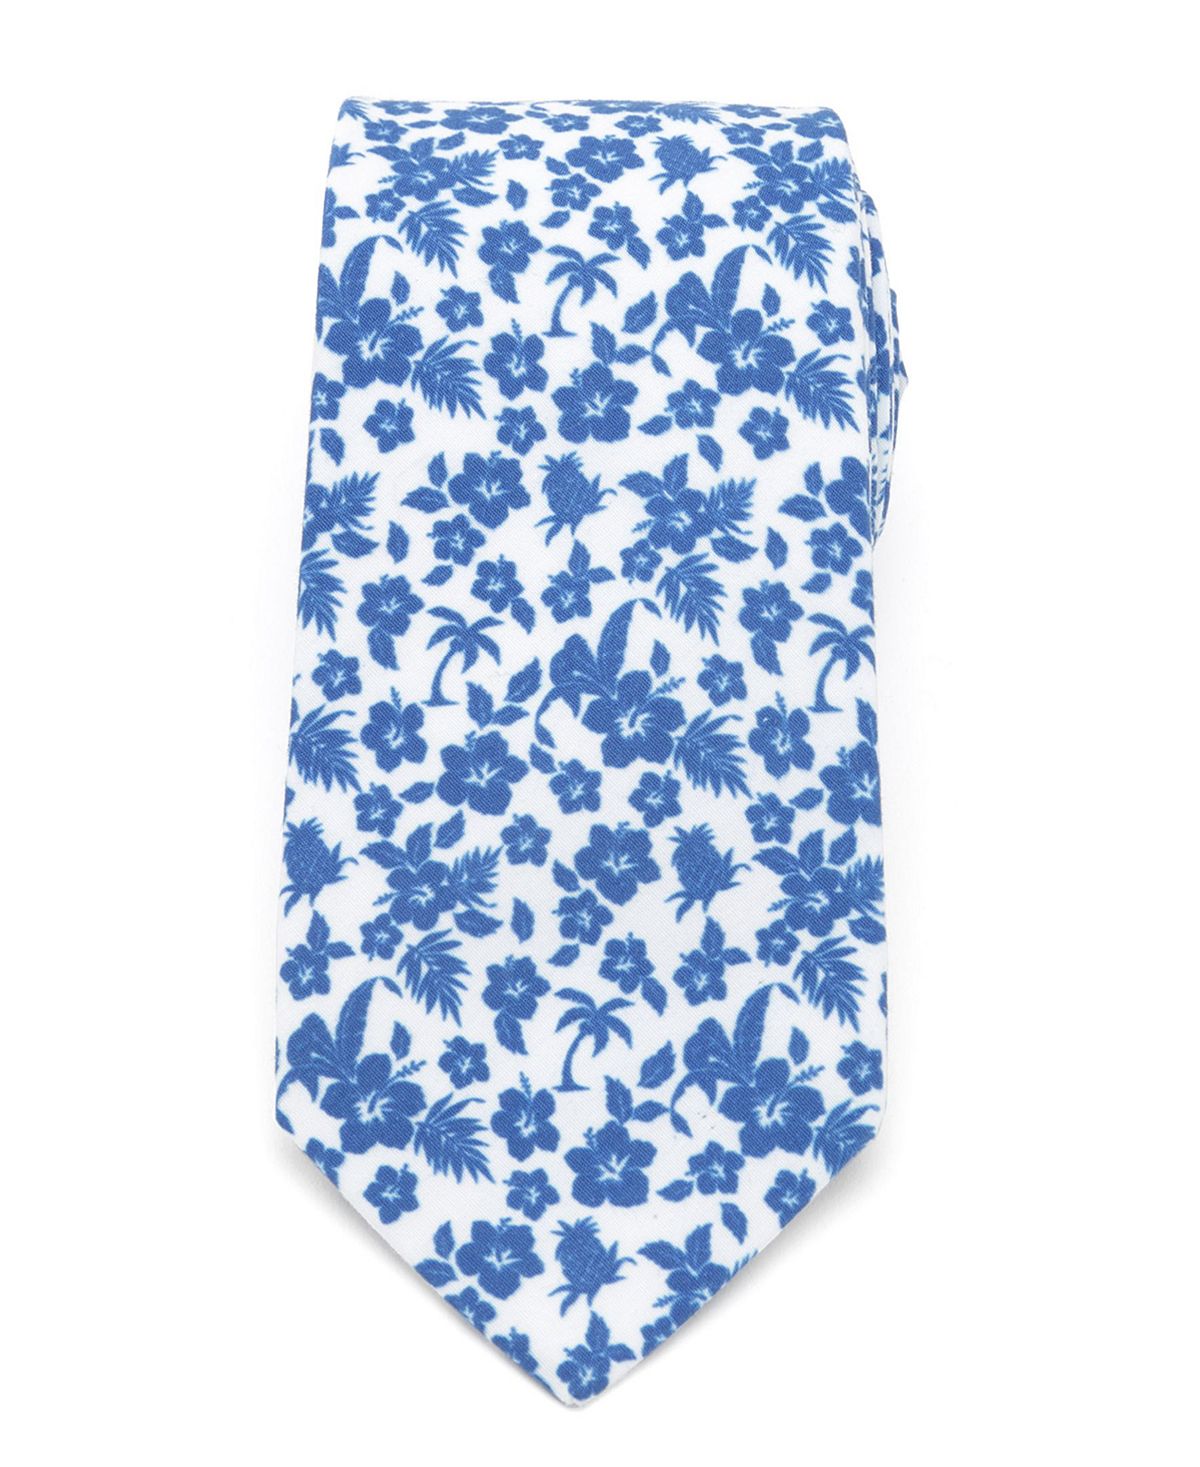 Мужской синий галстук в тропическом стиле Cufflinks Inc.